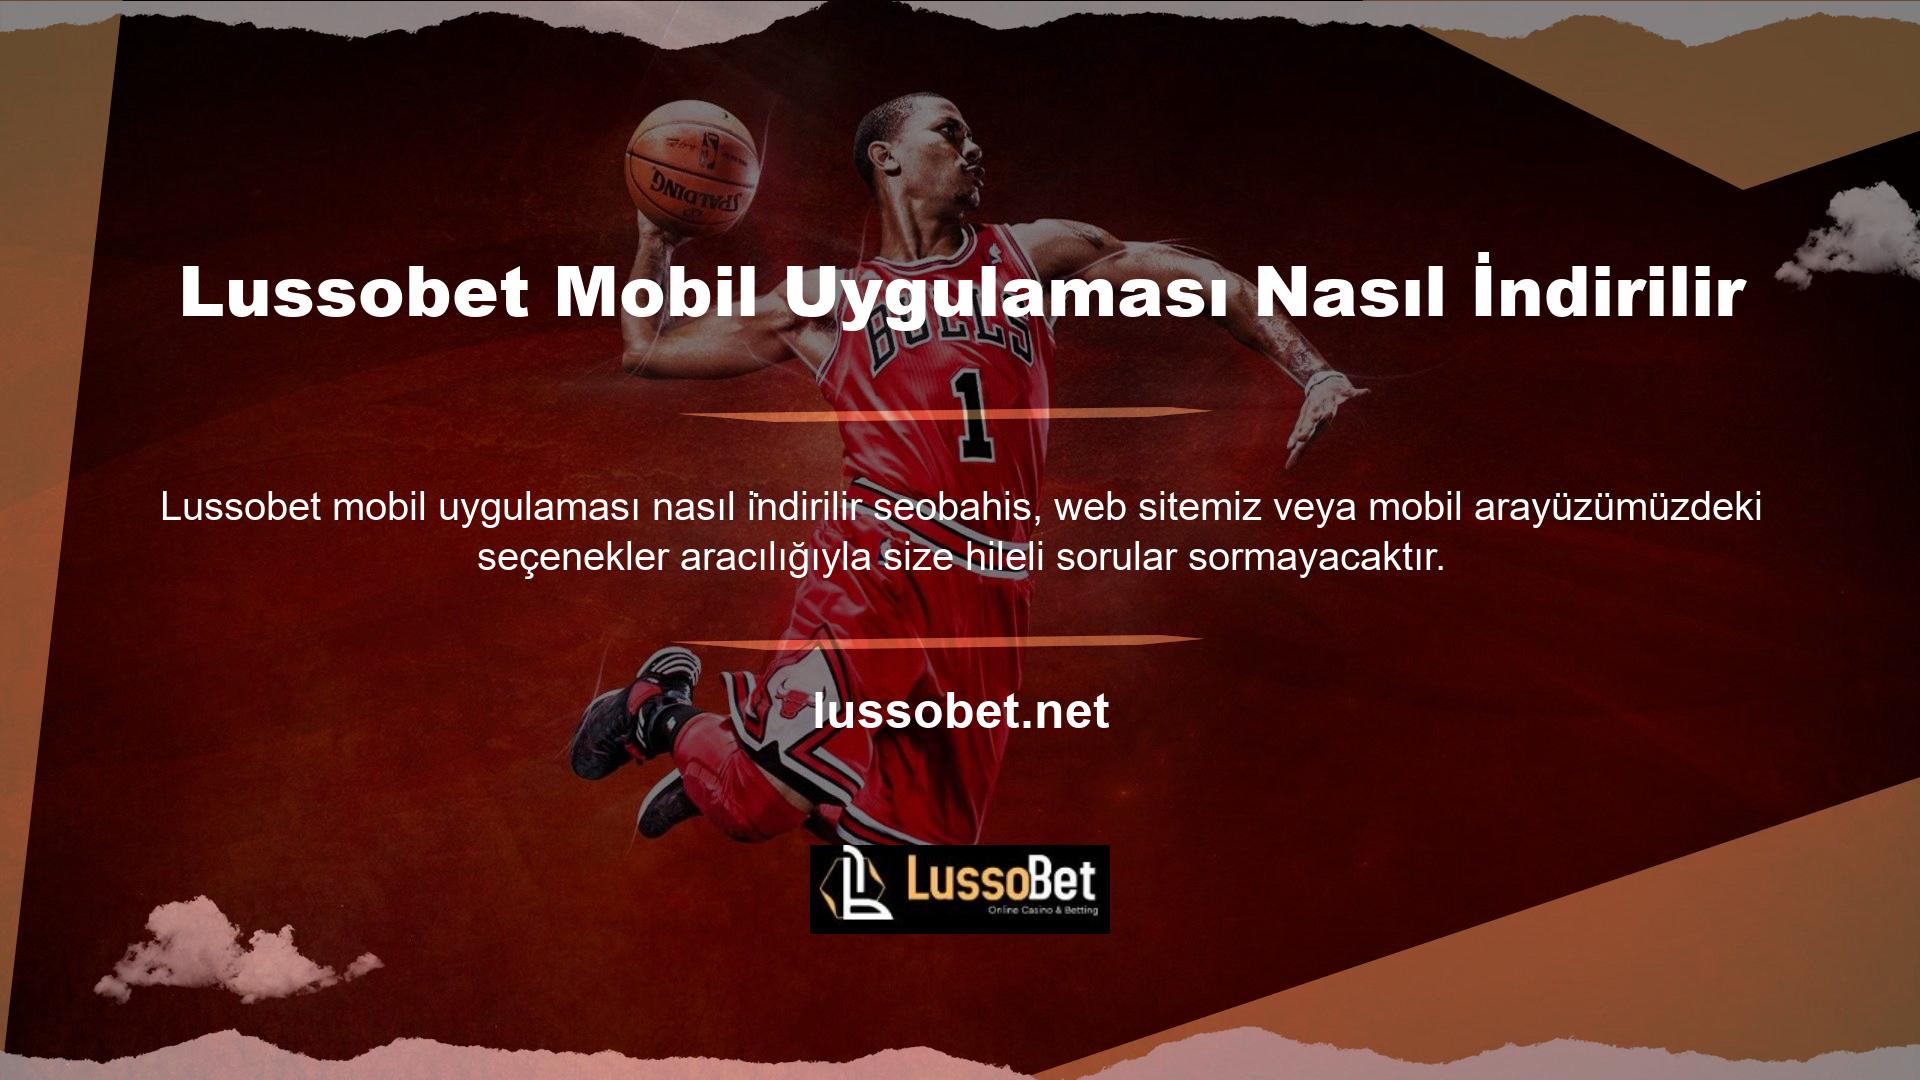 Lussobet sitedeki tüm oyun seçeneklerini takip ediyor, bu nedenle cep telefonunuzda hile yapma şansınız yok